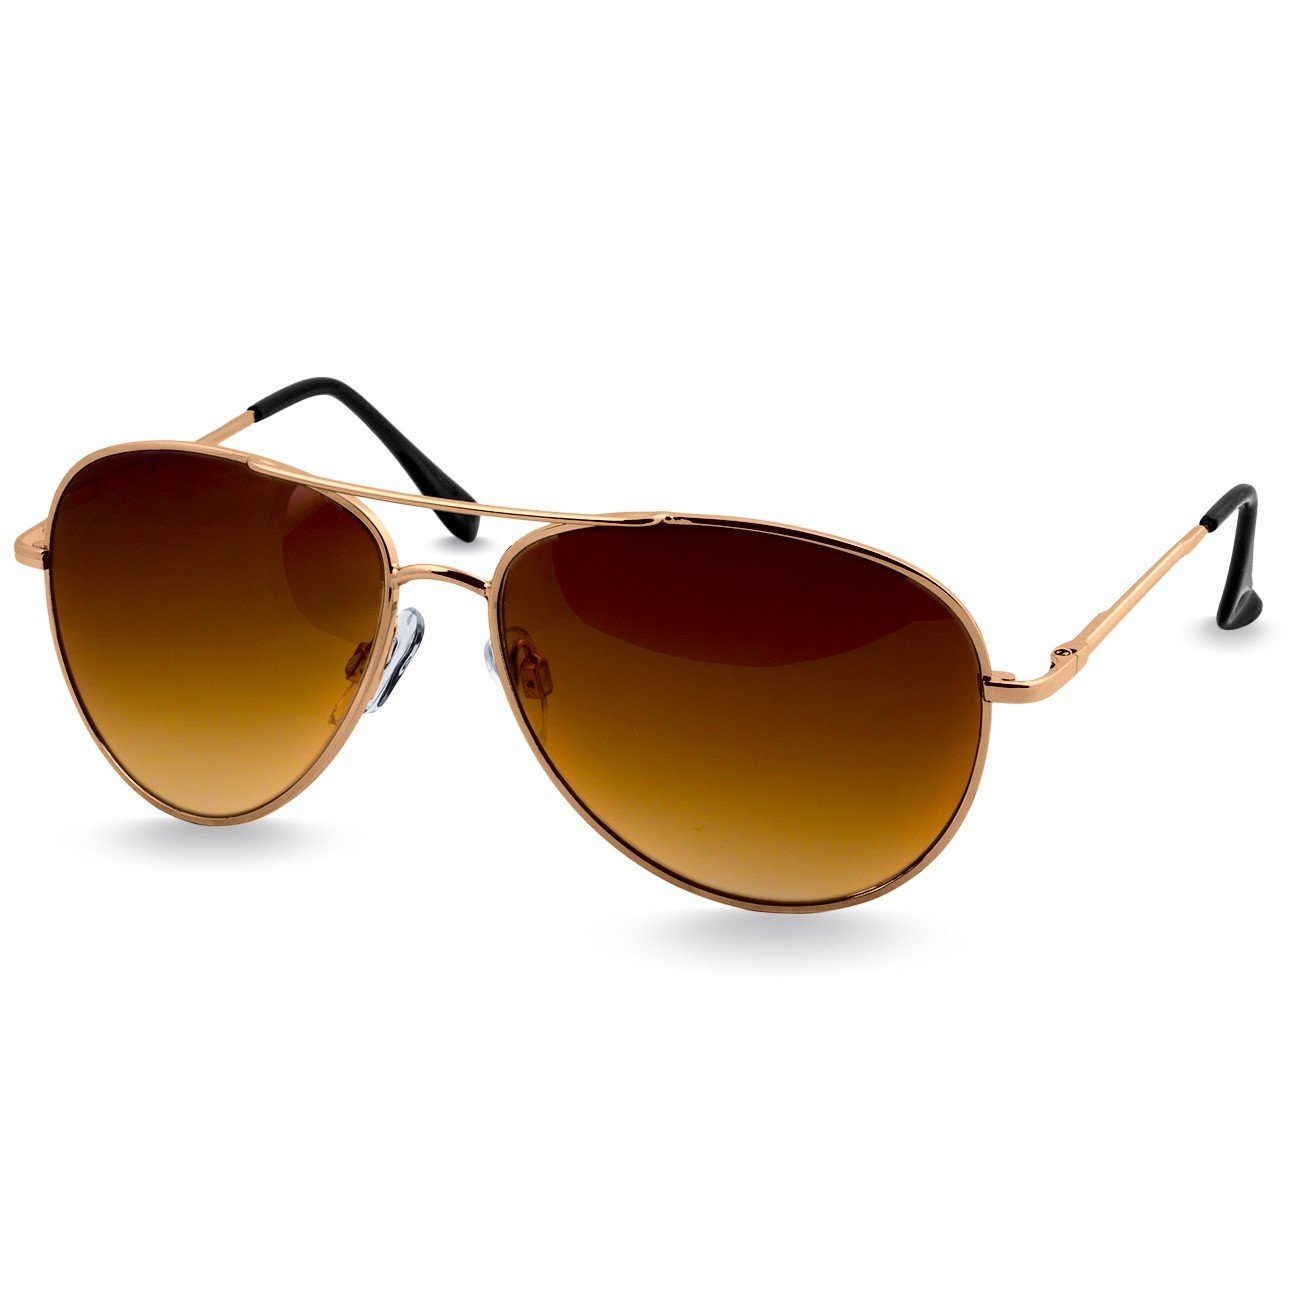 Caspar Sonnenbrille SG013 klassische Unisex Retro Pilotenbrille gold / braun getönt